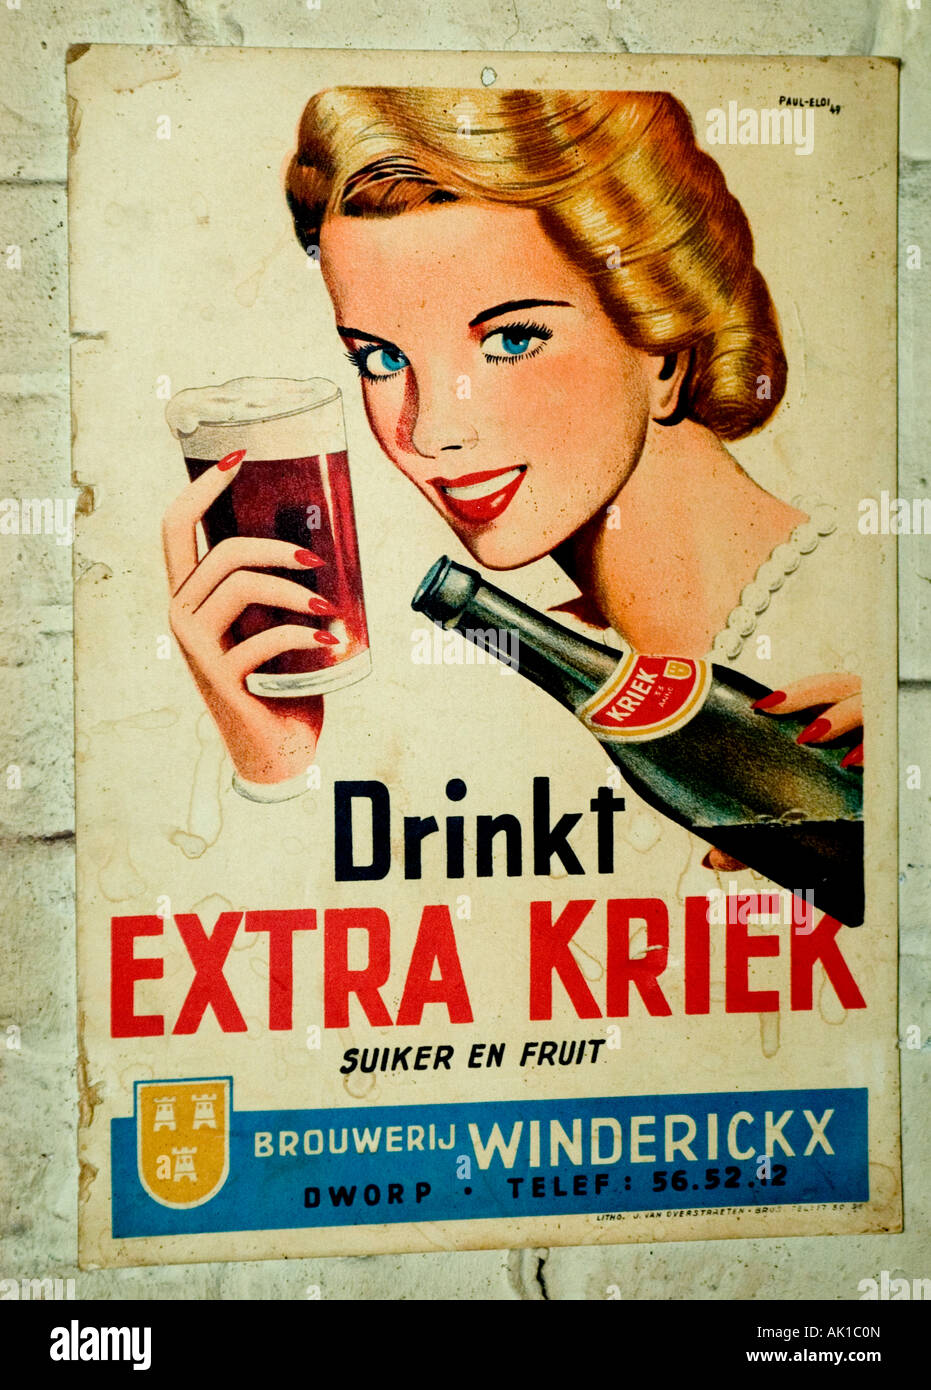 Пару постеров старой рекламы алкоголя. Бельгийское пиво Алкоголь,Пиво,Реклама